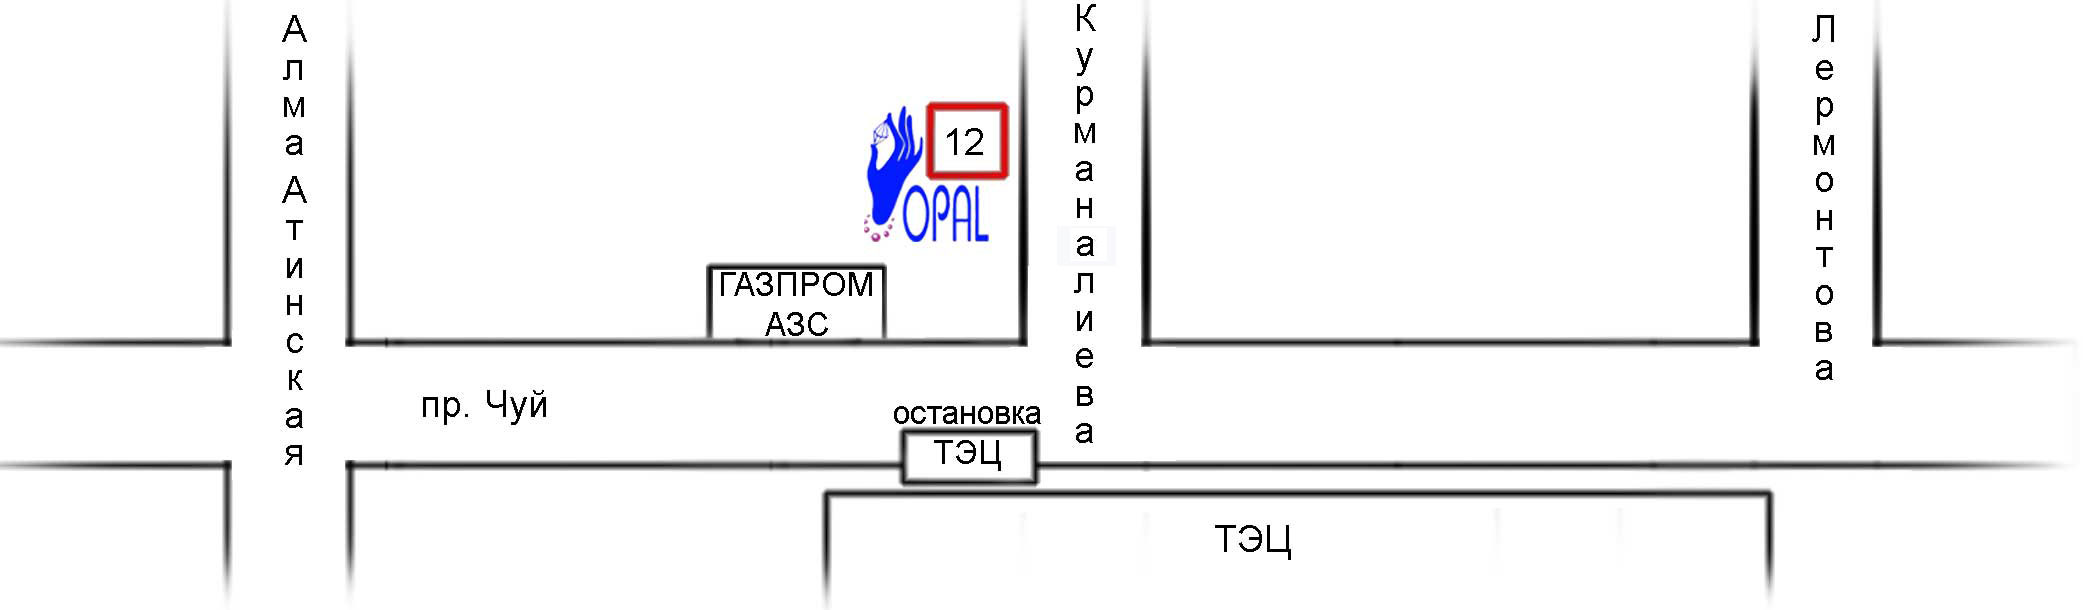 Схема проезда в компанию Опал